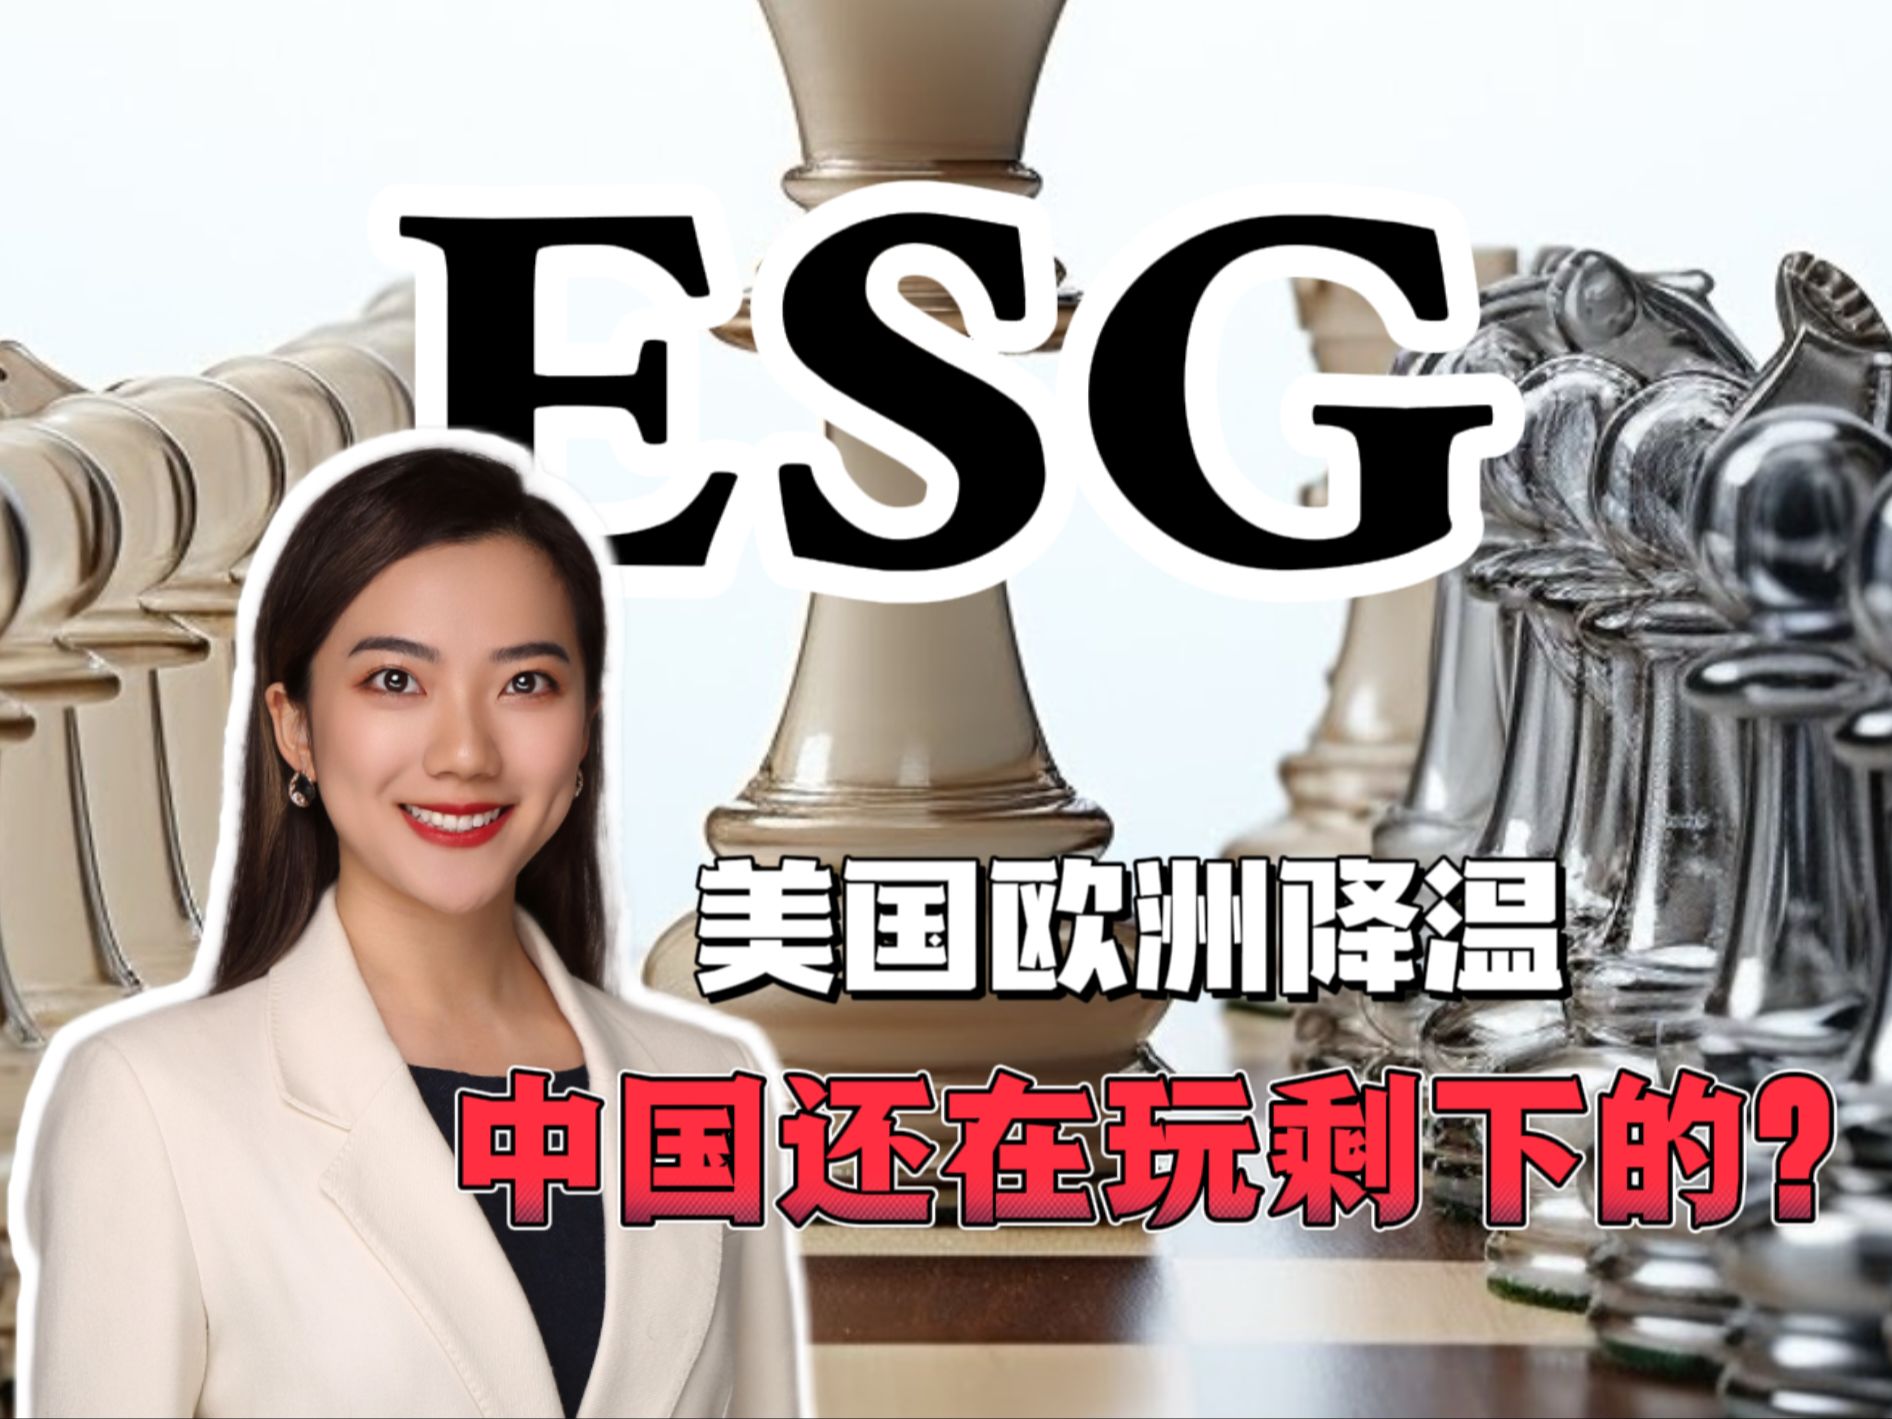 美欧都在降温，中国还在玩别人玩剩的ESG？